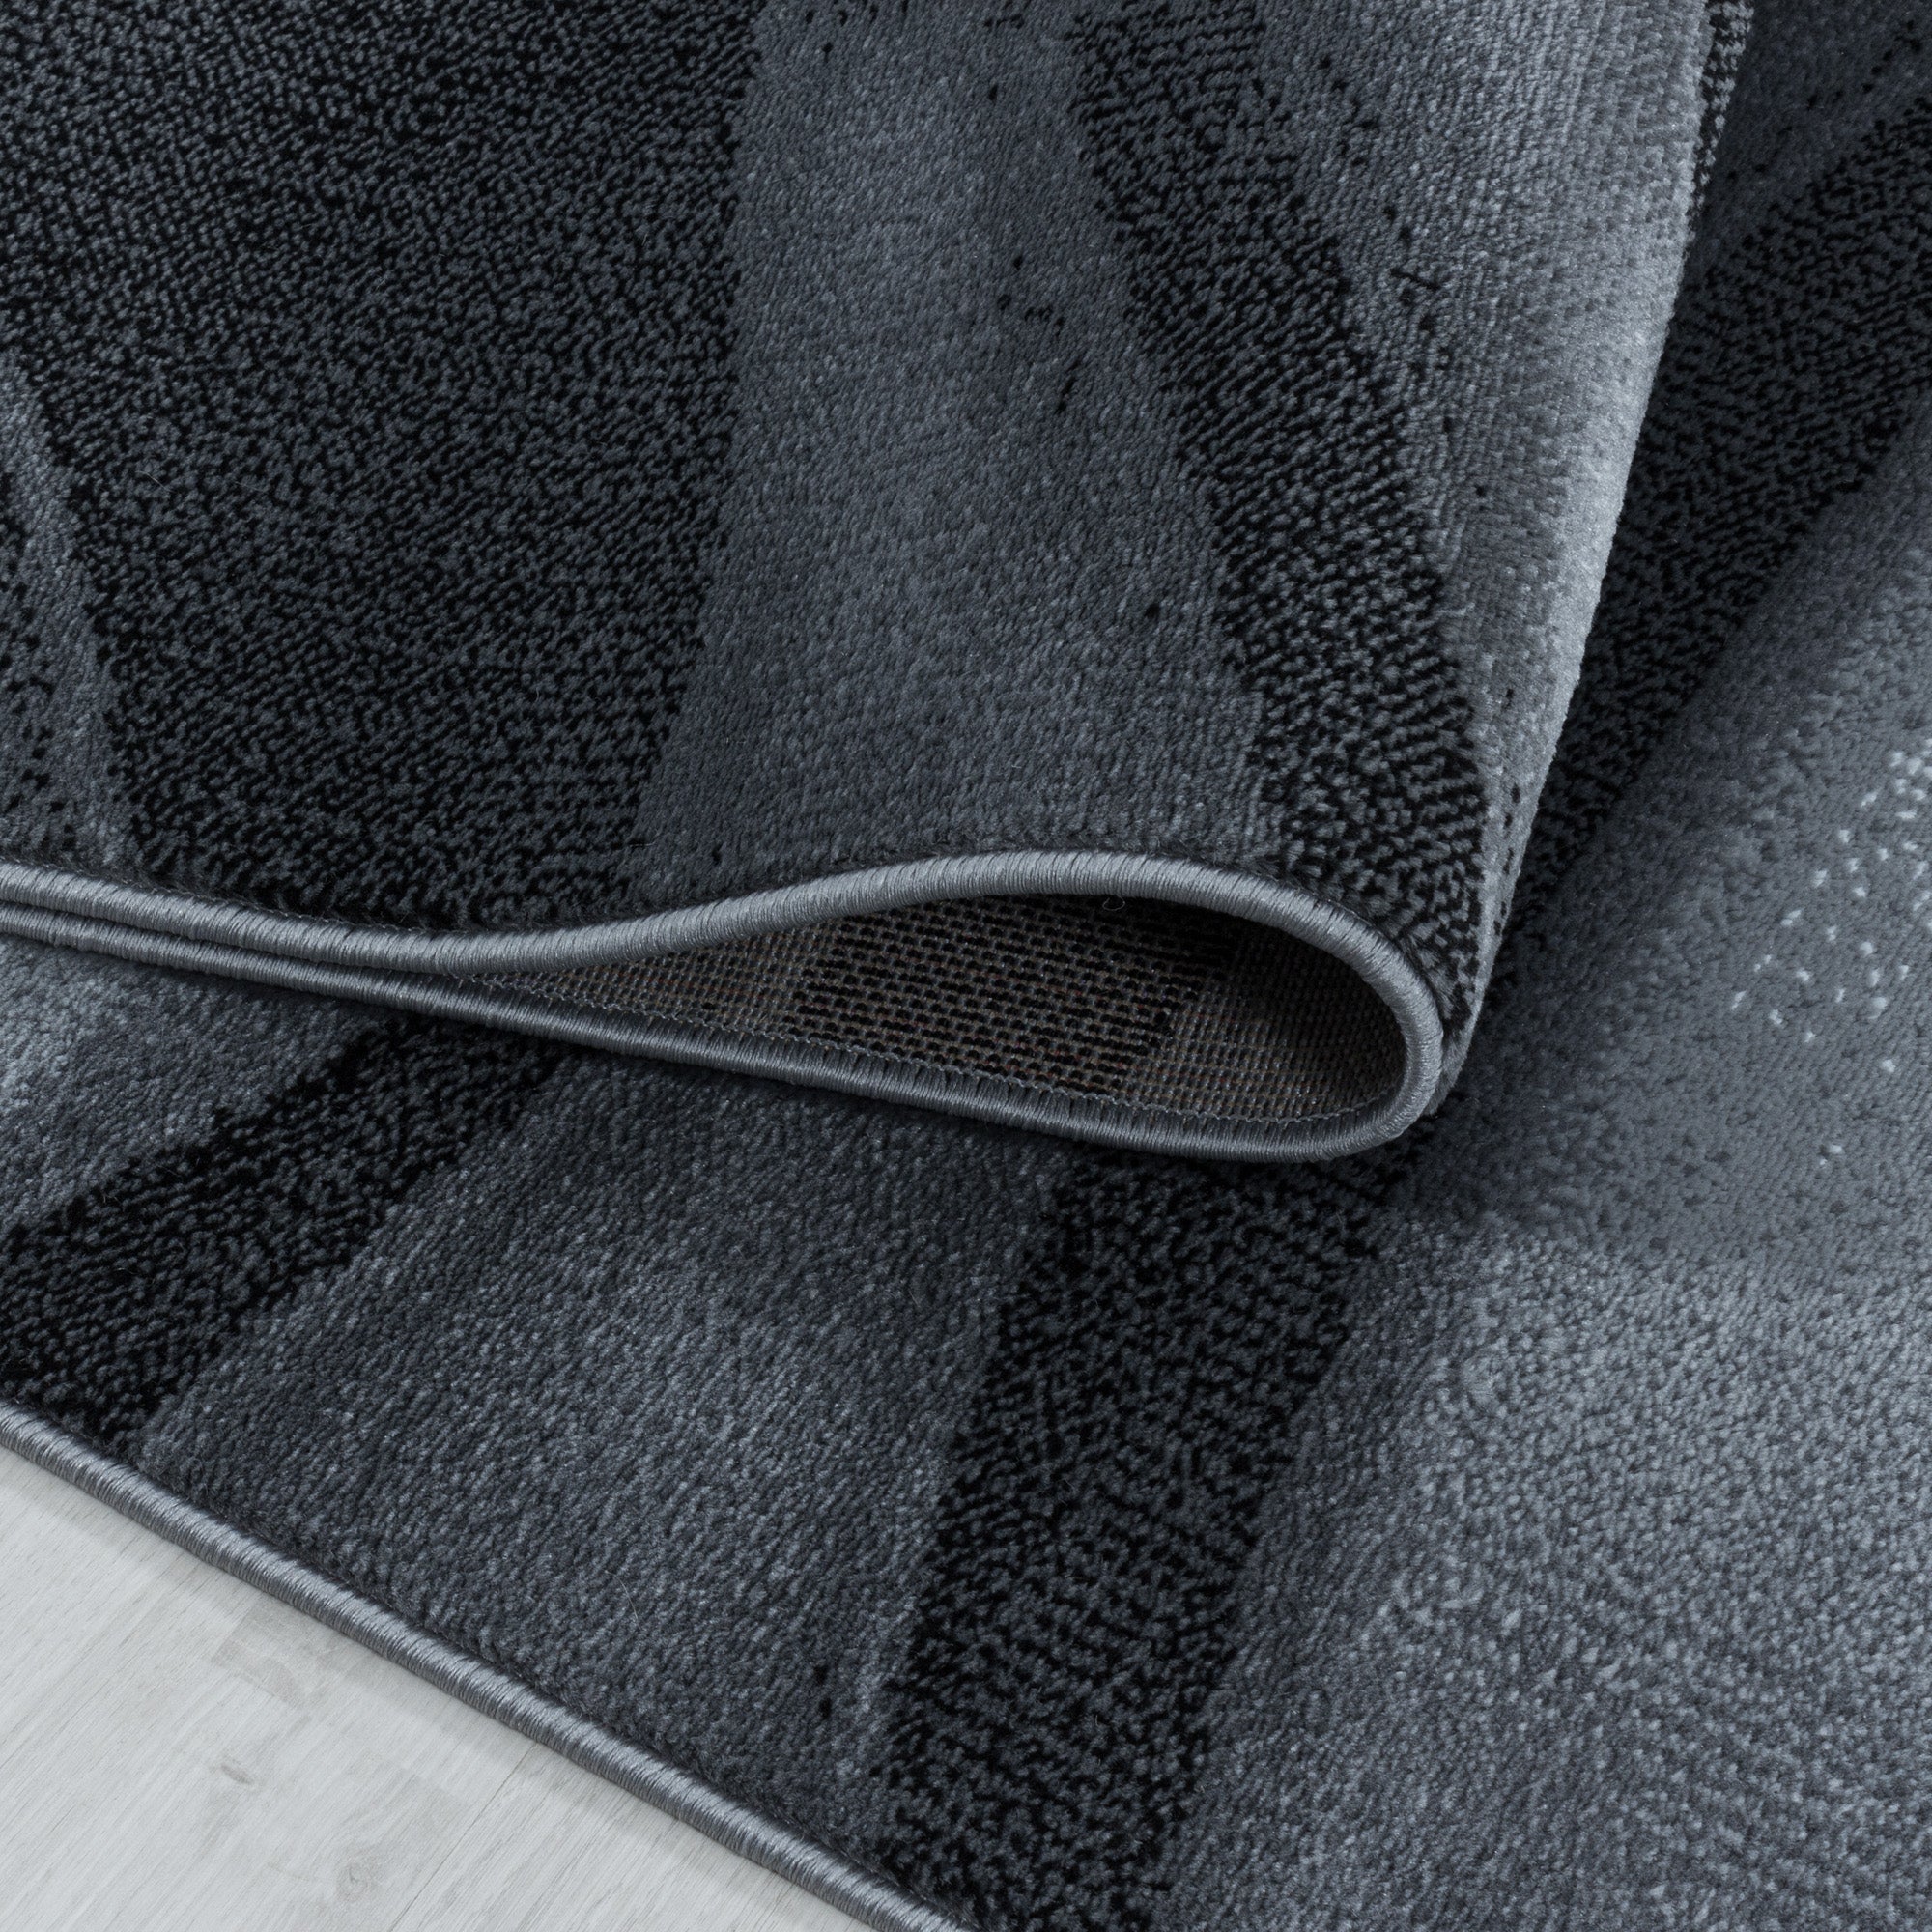 Tapis à poils ras tapis design vague noir tapis de style moderne salon